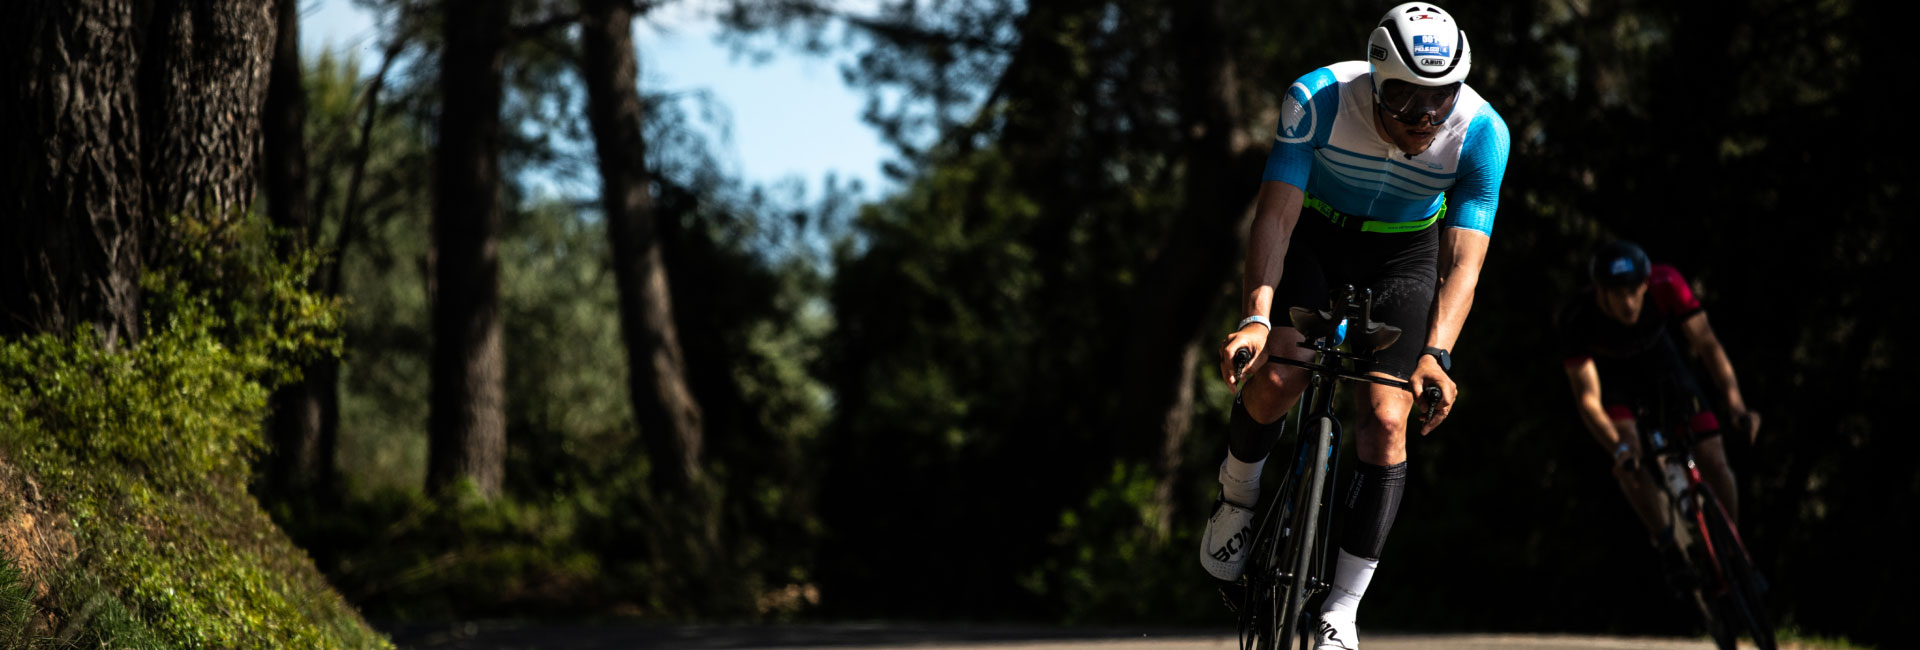 VÍctor Arroyo, campeón de España de triatlón LD, analiza el nuevo POLAR  Pacer Pro